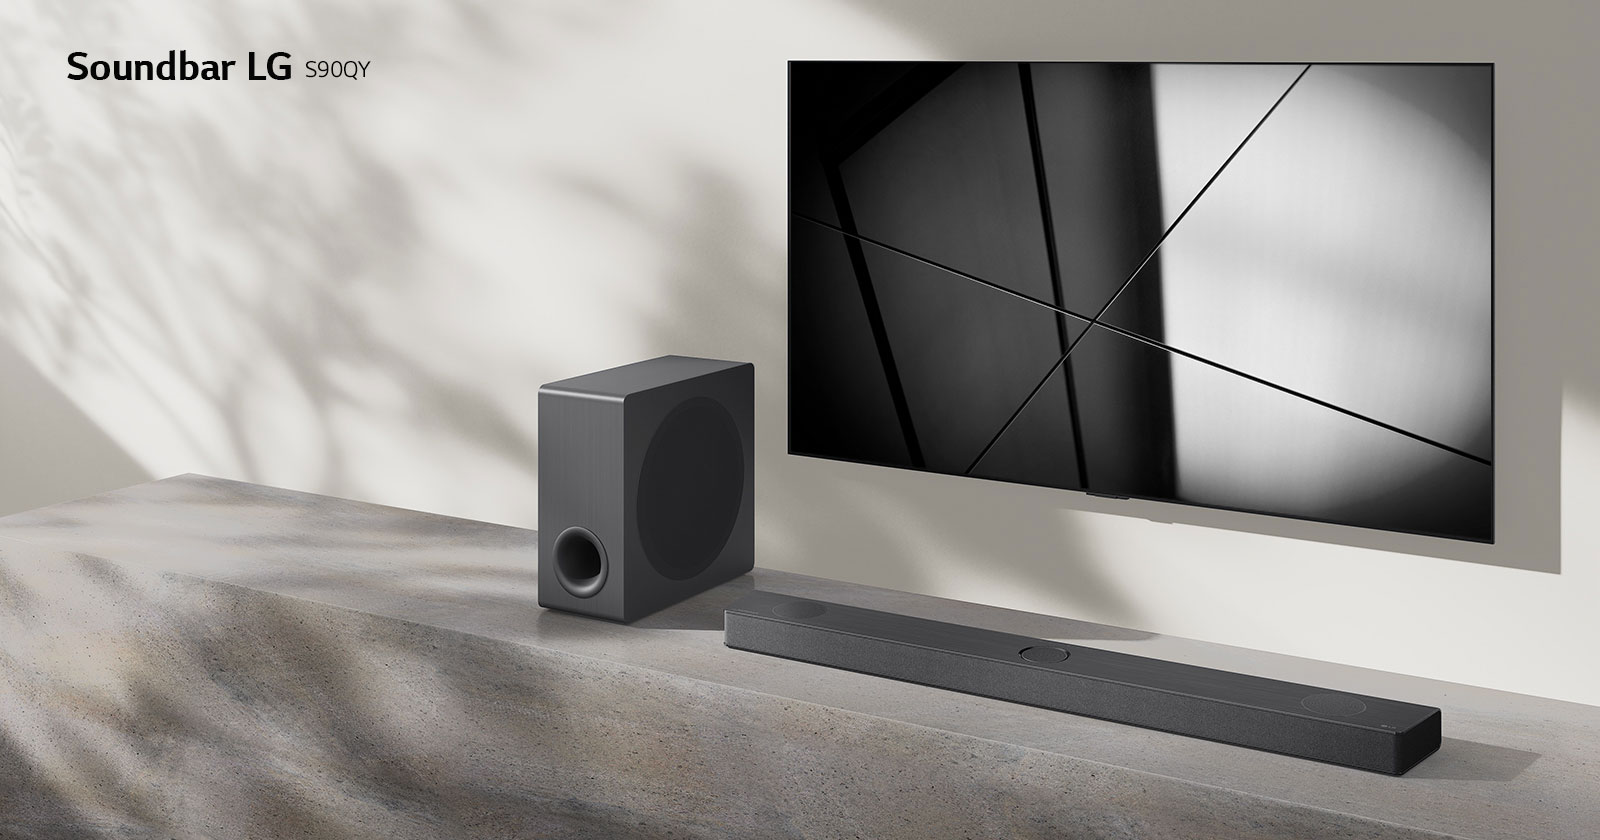 Soundbar LG S90QY i telewizor LG stoją razem w pokoju dziennym. Na ekranie włączonego telewizora jest wyświetlony czarno-biały obraz.